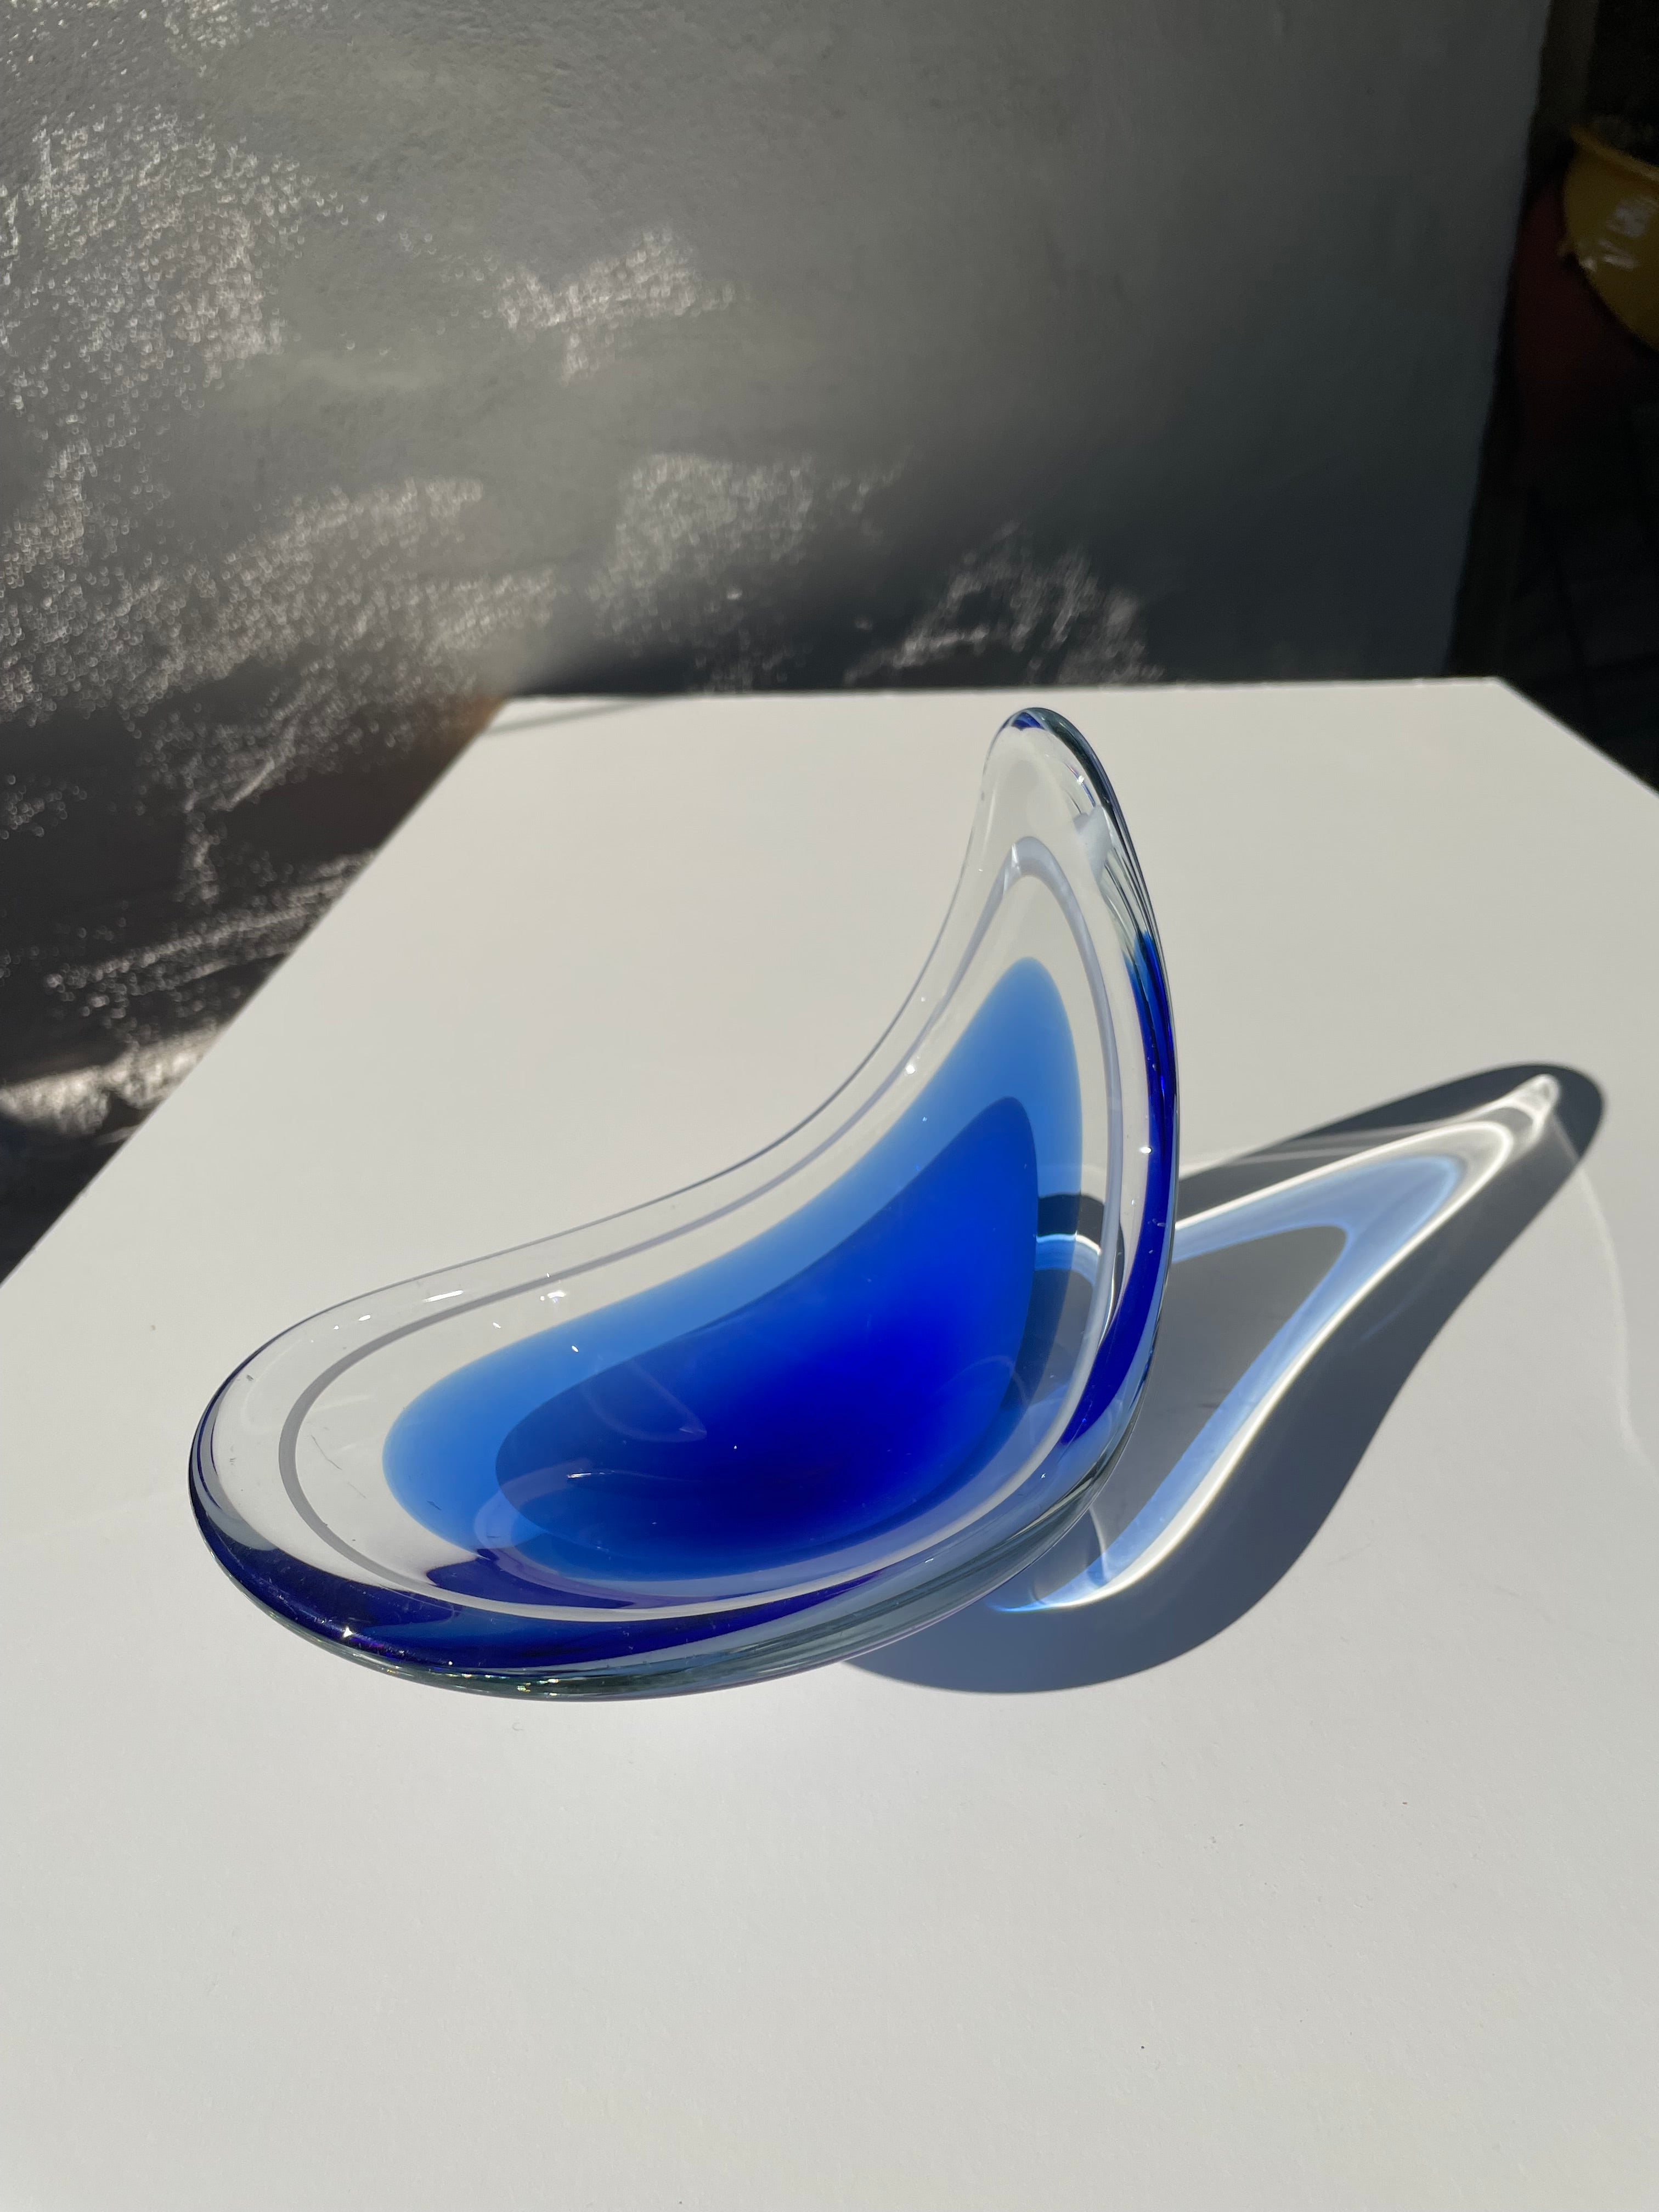 Lebendiges tiefblaues Overlay-Kunstglas, entworfen von Paul Kedelv für Flygsfors aus Schweden. Ein seltener blauer Artikel der Coquille-Serie aus dem Jahr 1956. Weiche mundgeblasene Formen mit einer angehobenen Seite. Tiefblaues, durchscheinendes